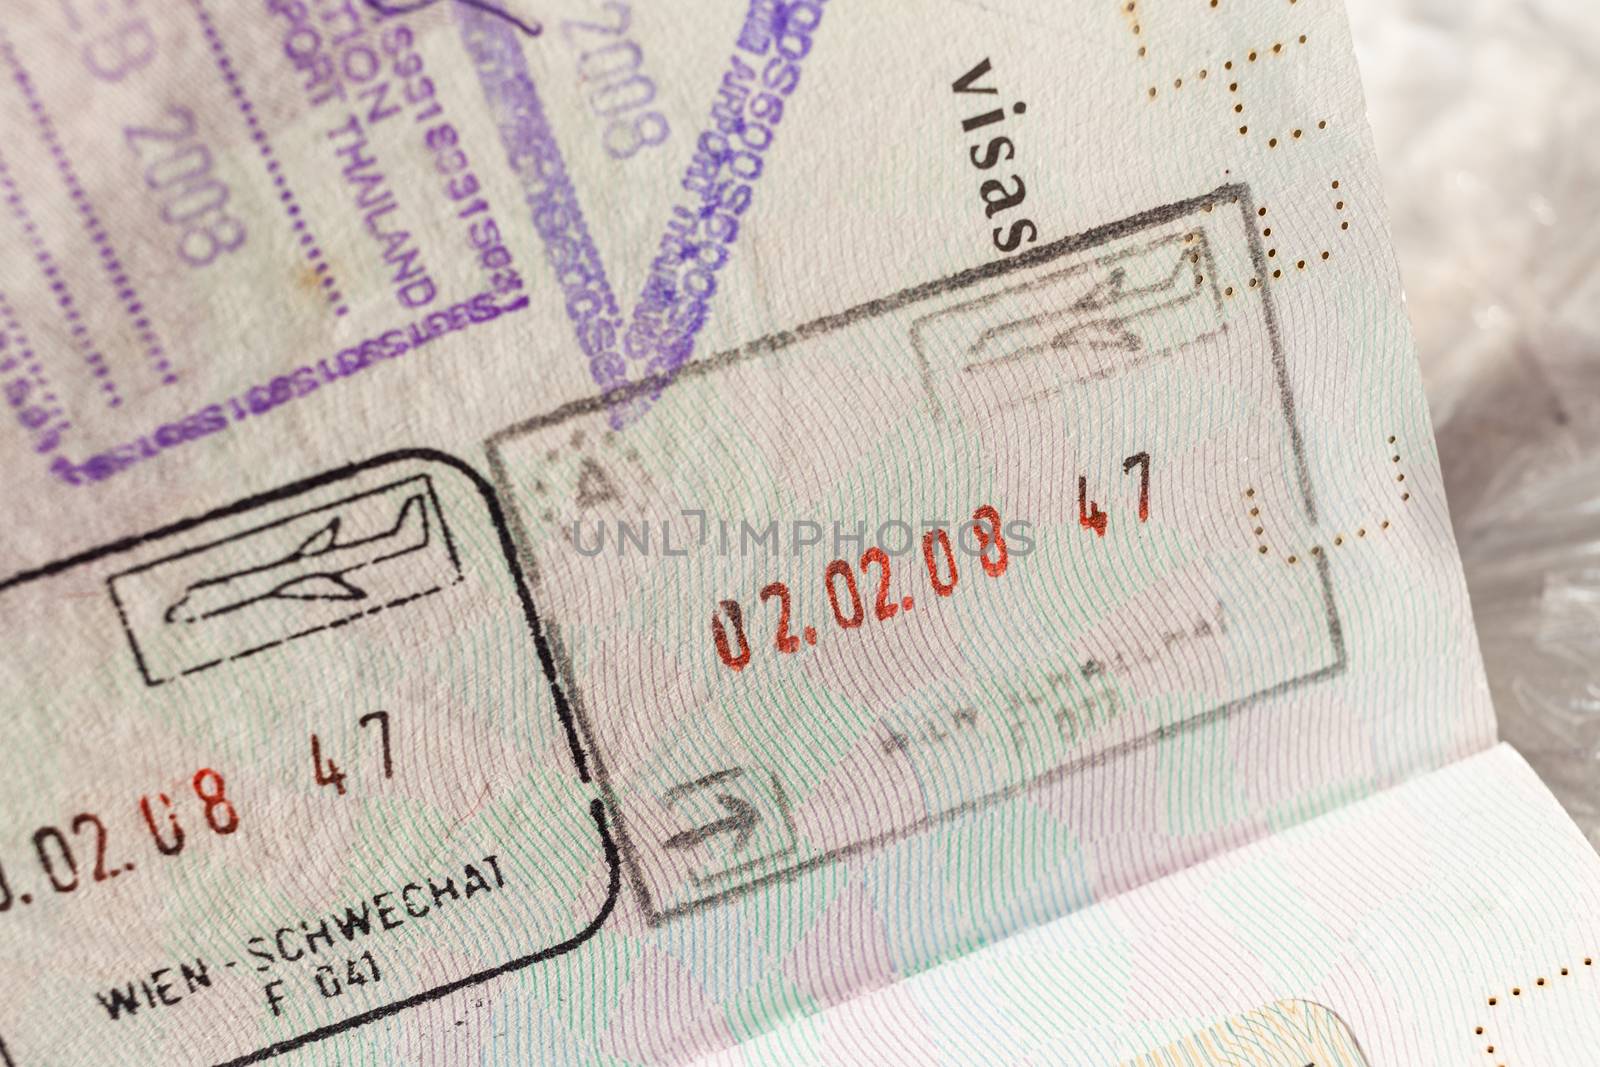 Passport stamp visa for travel concept background, Paris France by FrameAngel